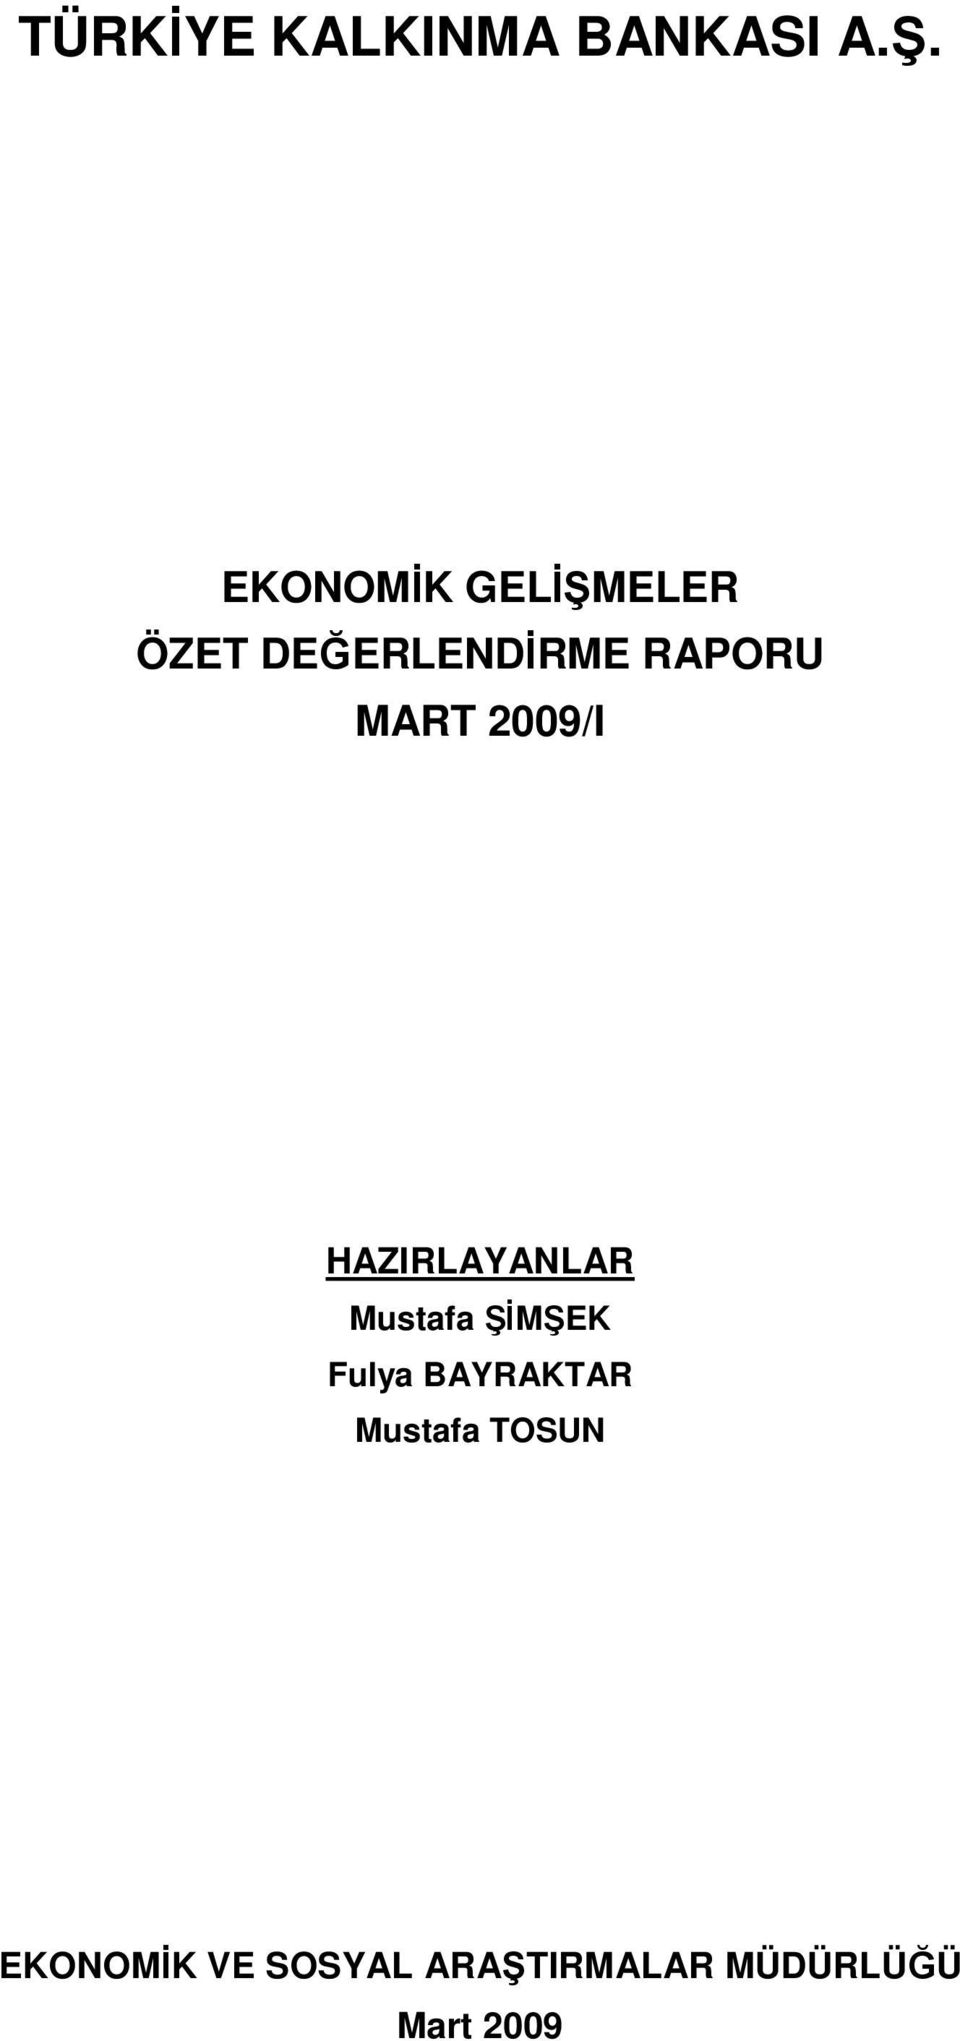 MART 2009/I HAZIRLAYANLAR Mustafa ŞİMŞEK Fulya